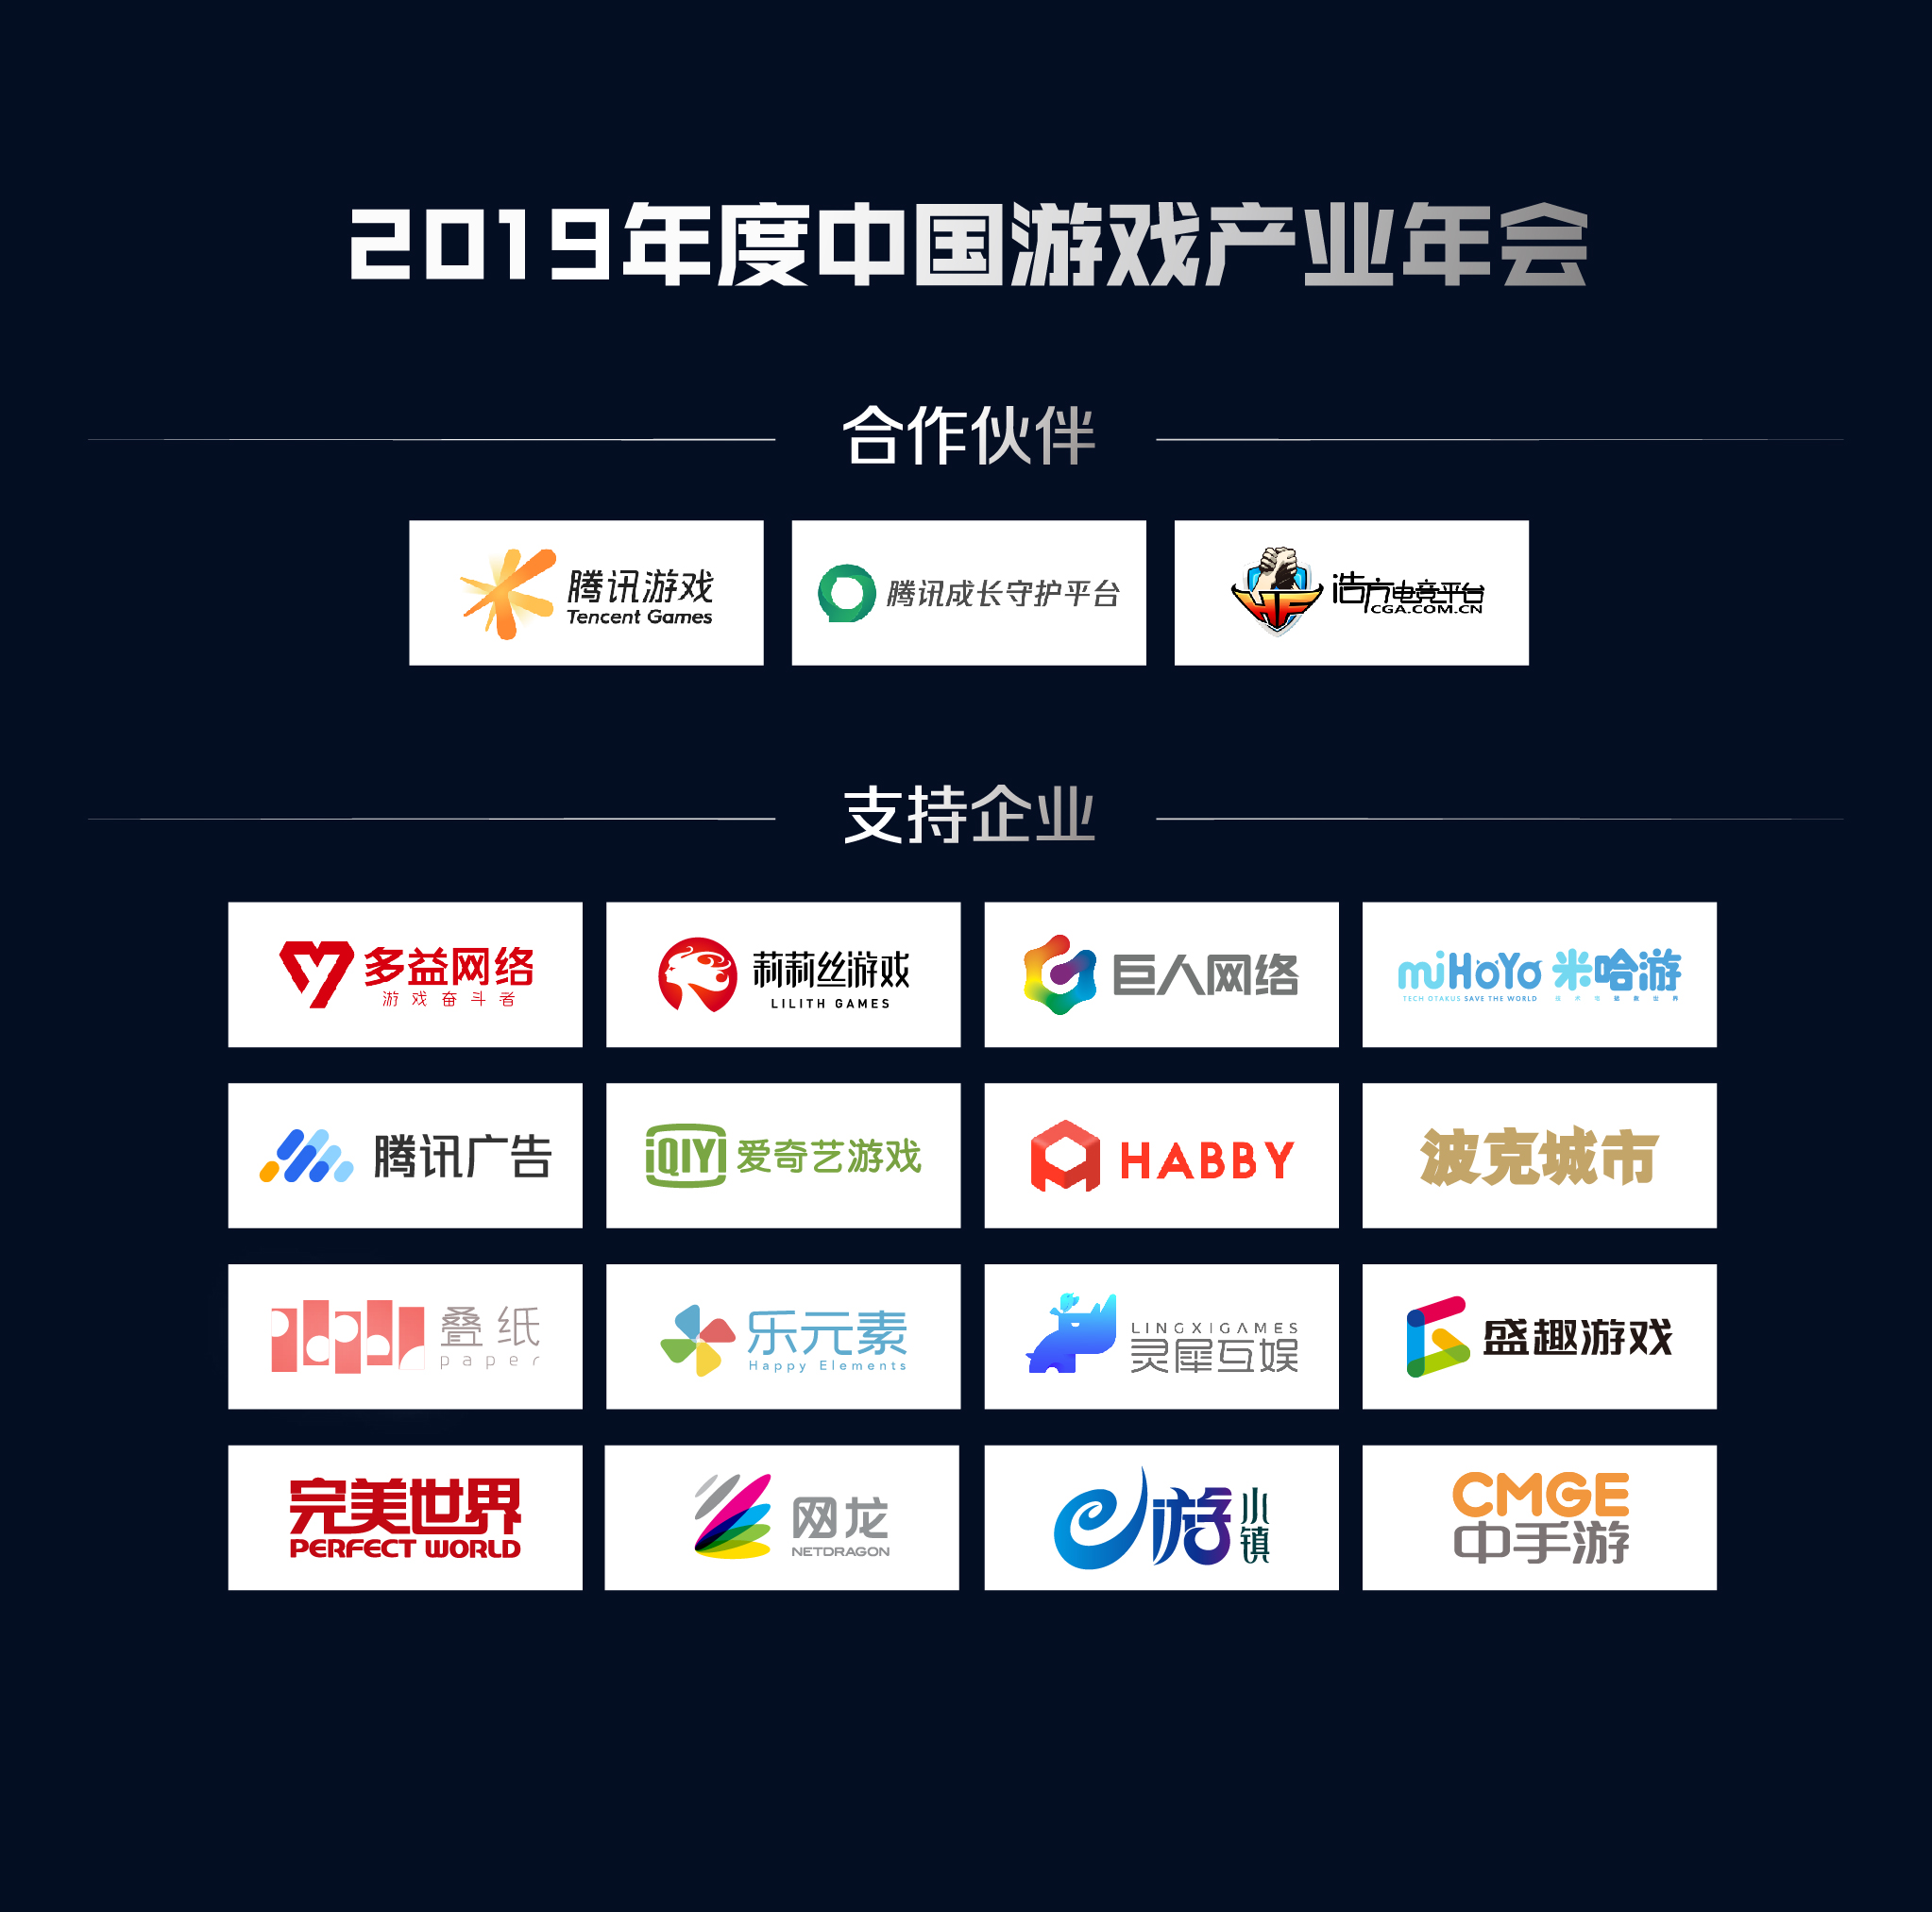 游戏行业最强音：2019年度中国游戏产业年会大会日程公布